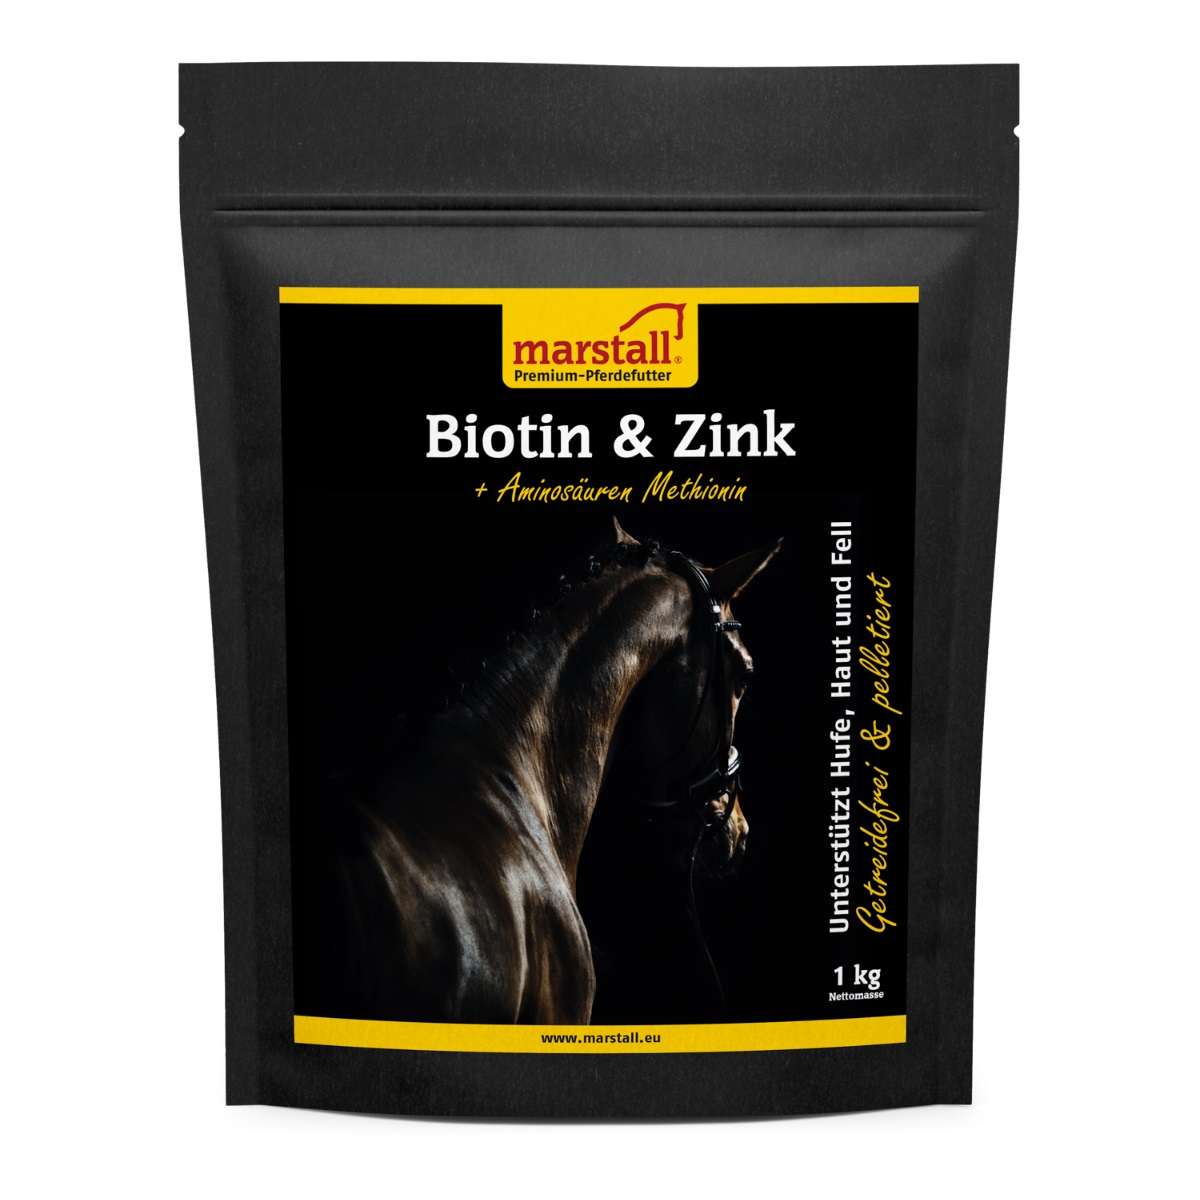 Køb Marstall Biotin & Zink - Biotintilskud med zink til hud og hove. Bestil i dag – Vi leverer i løbet af 1-3 dage. Fragtfrit fra kun 499.-